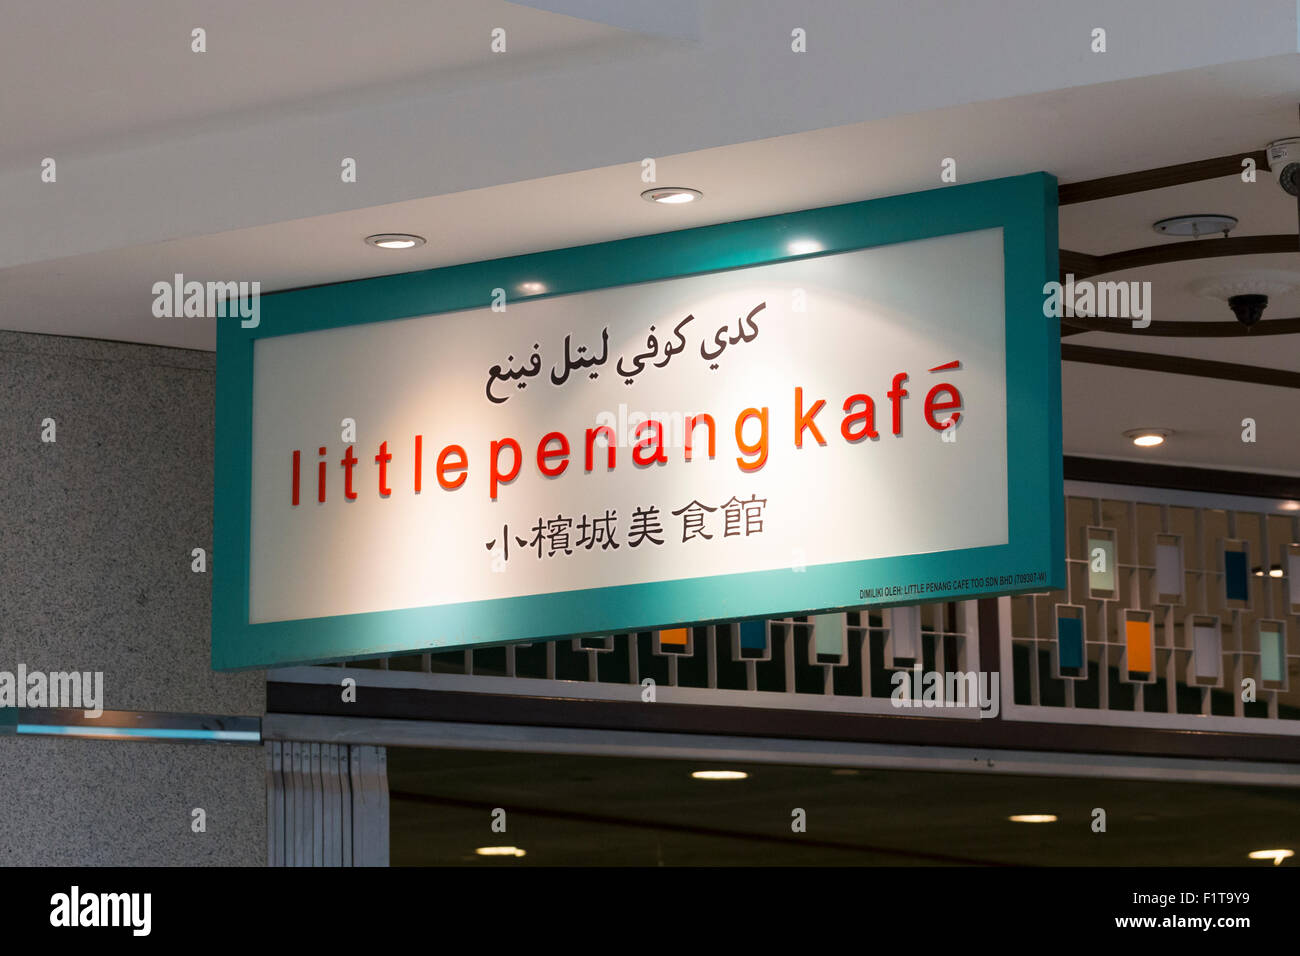 Little penang Kafe logo Stock Photo